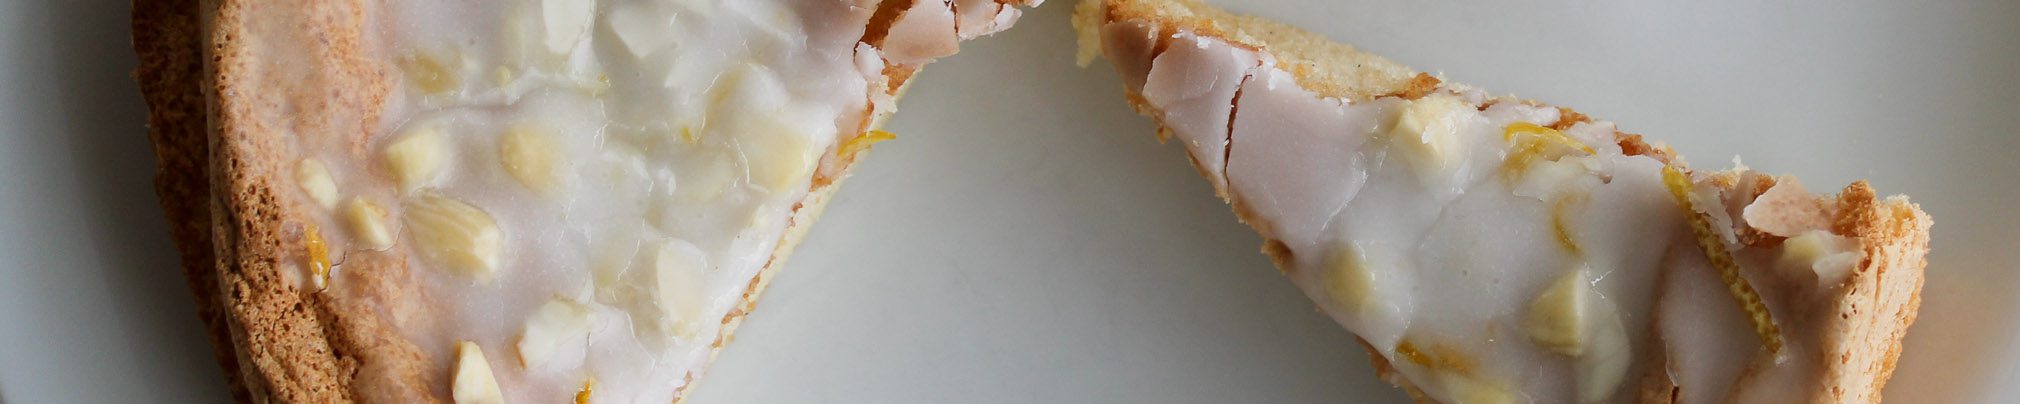 Sardinian almond cake